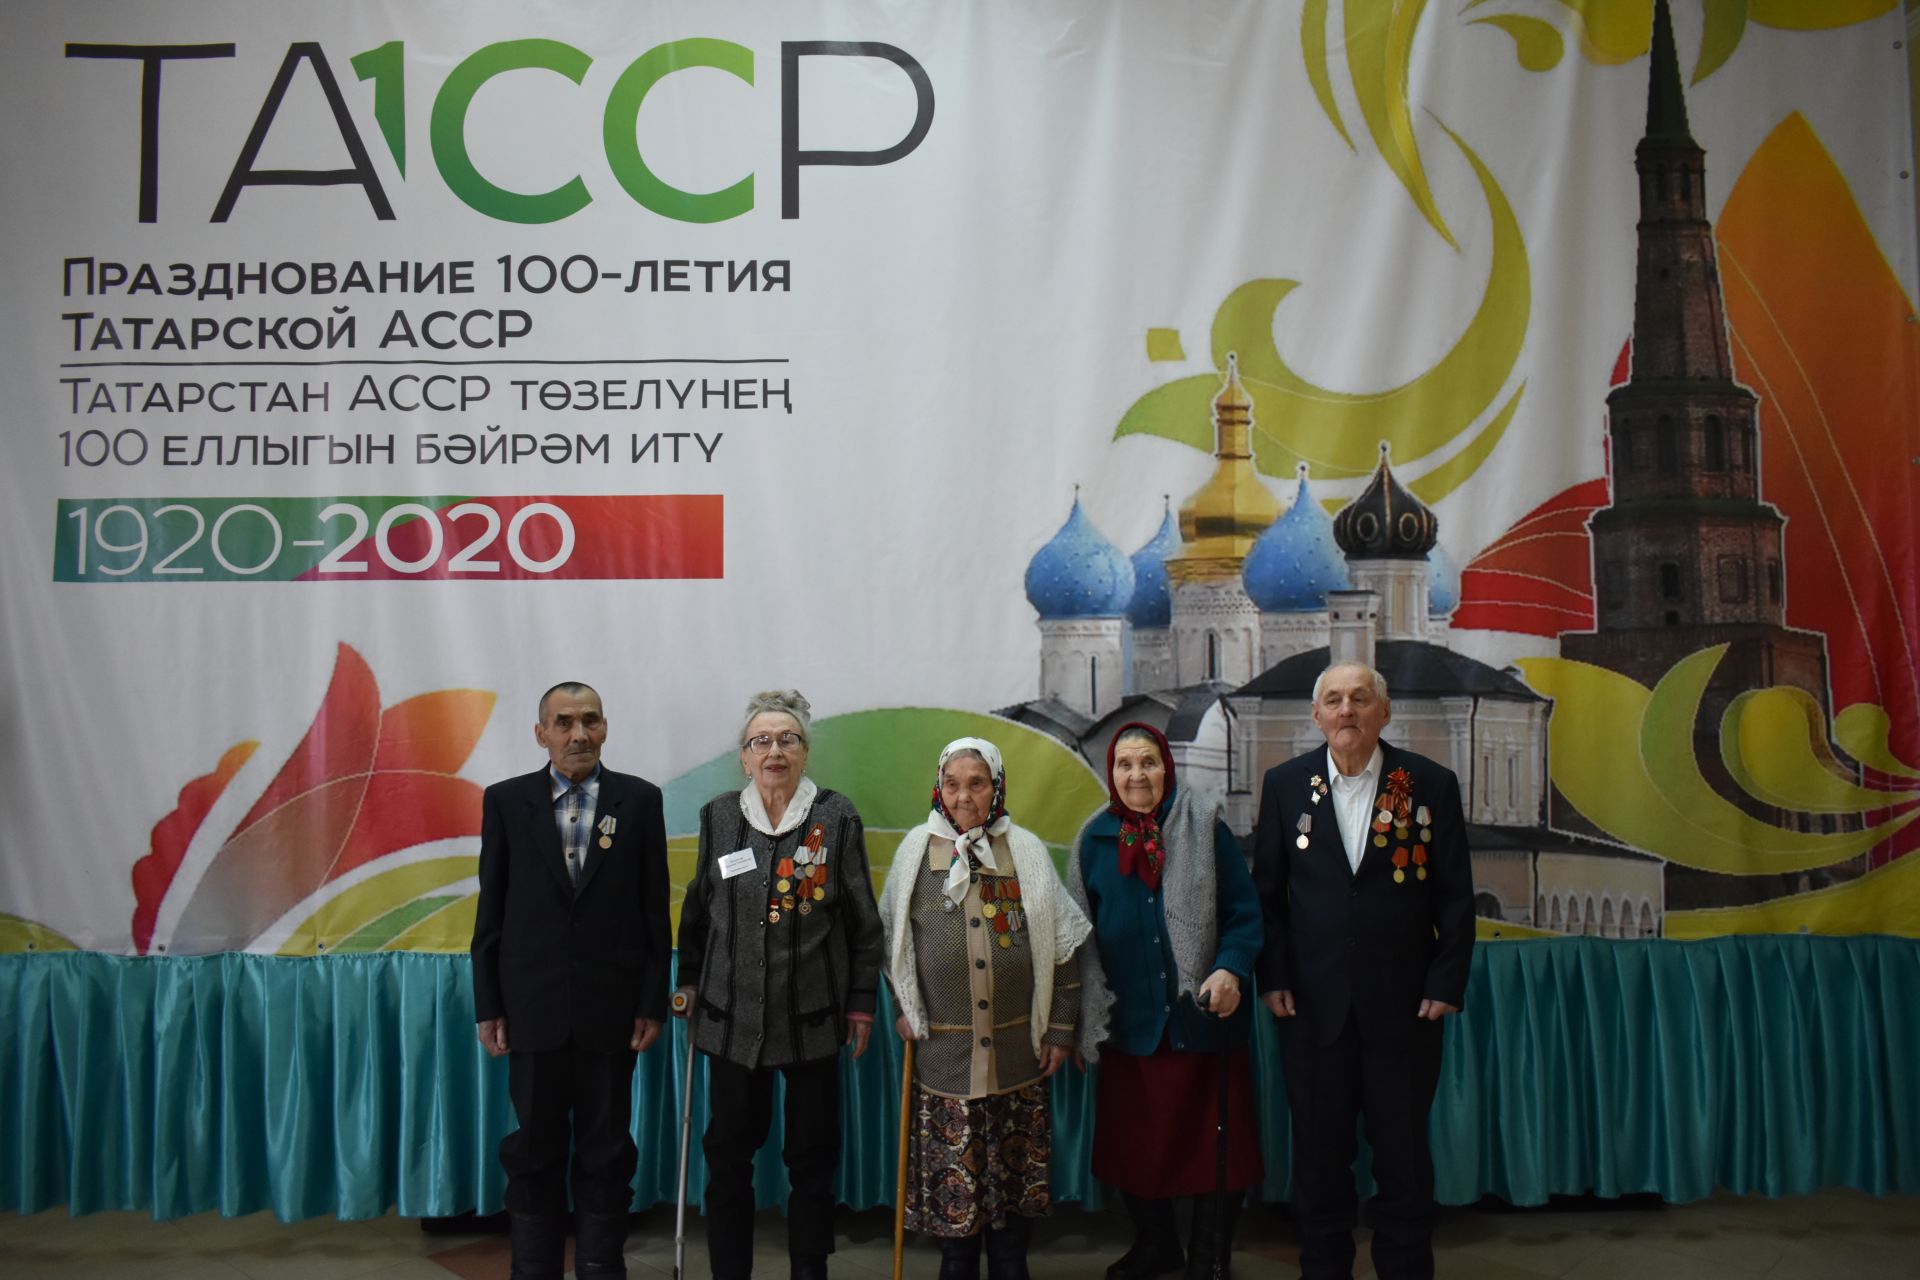 Заседание правления Общественной организации кряшен Республики Татарстан